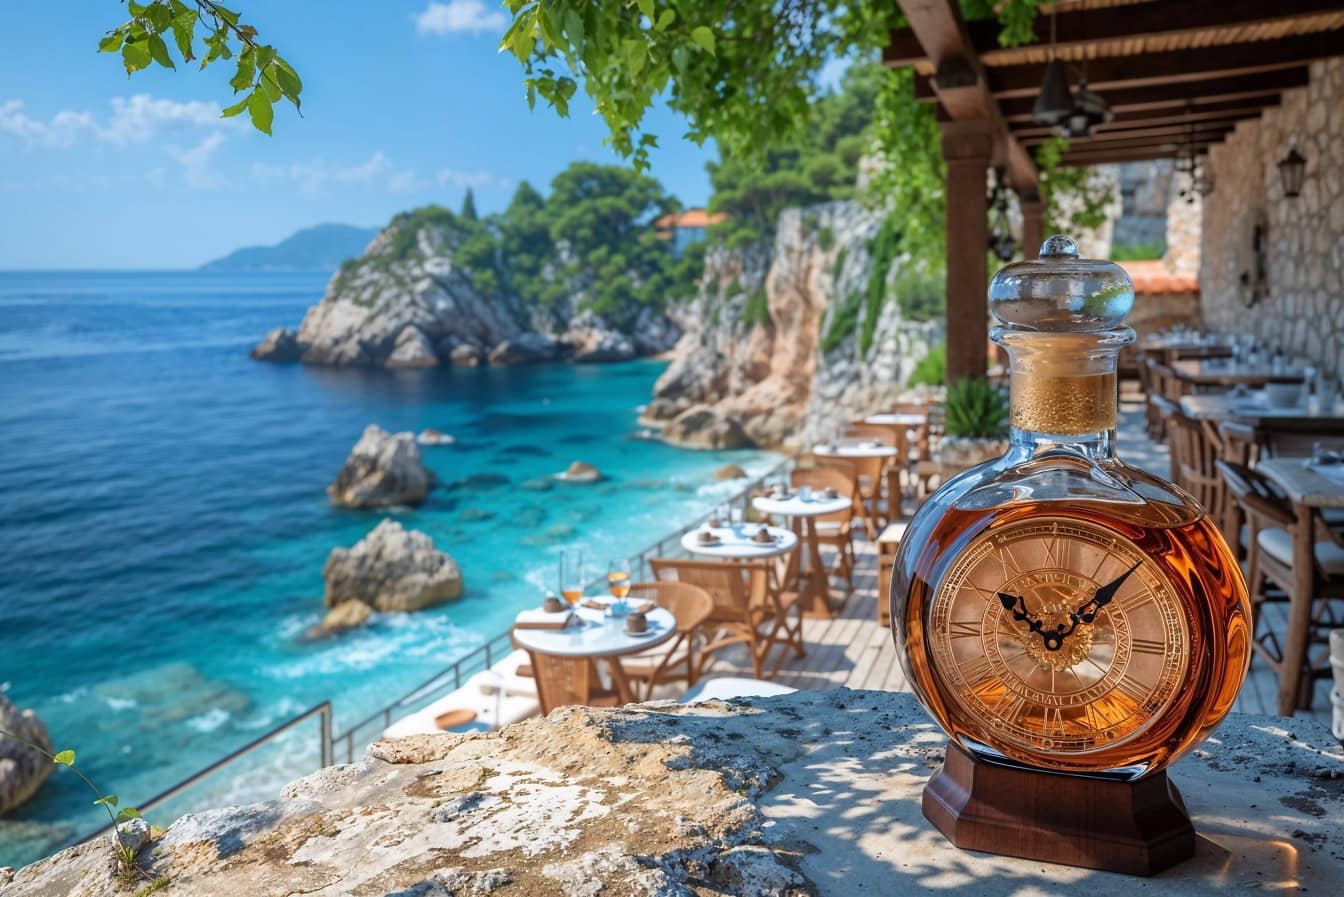 Chef-d’œuvre de bouteille de liqueur artisanale en forme de montre Carafe sur la table du restaurant au bord de la plage